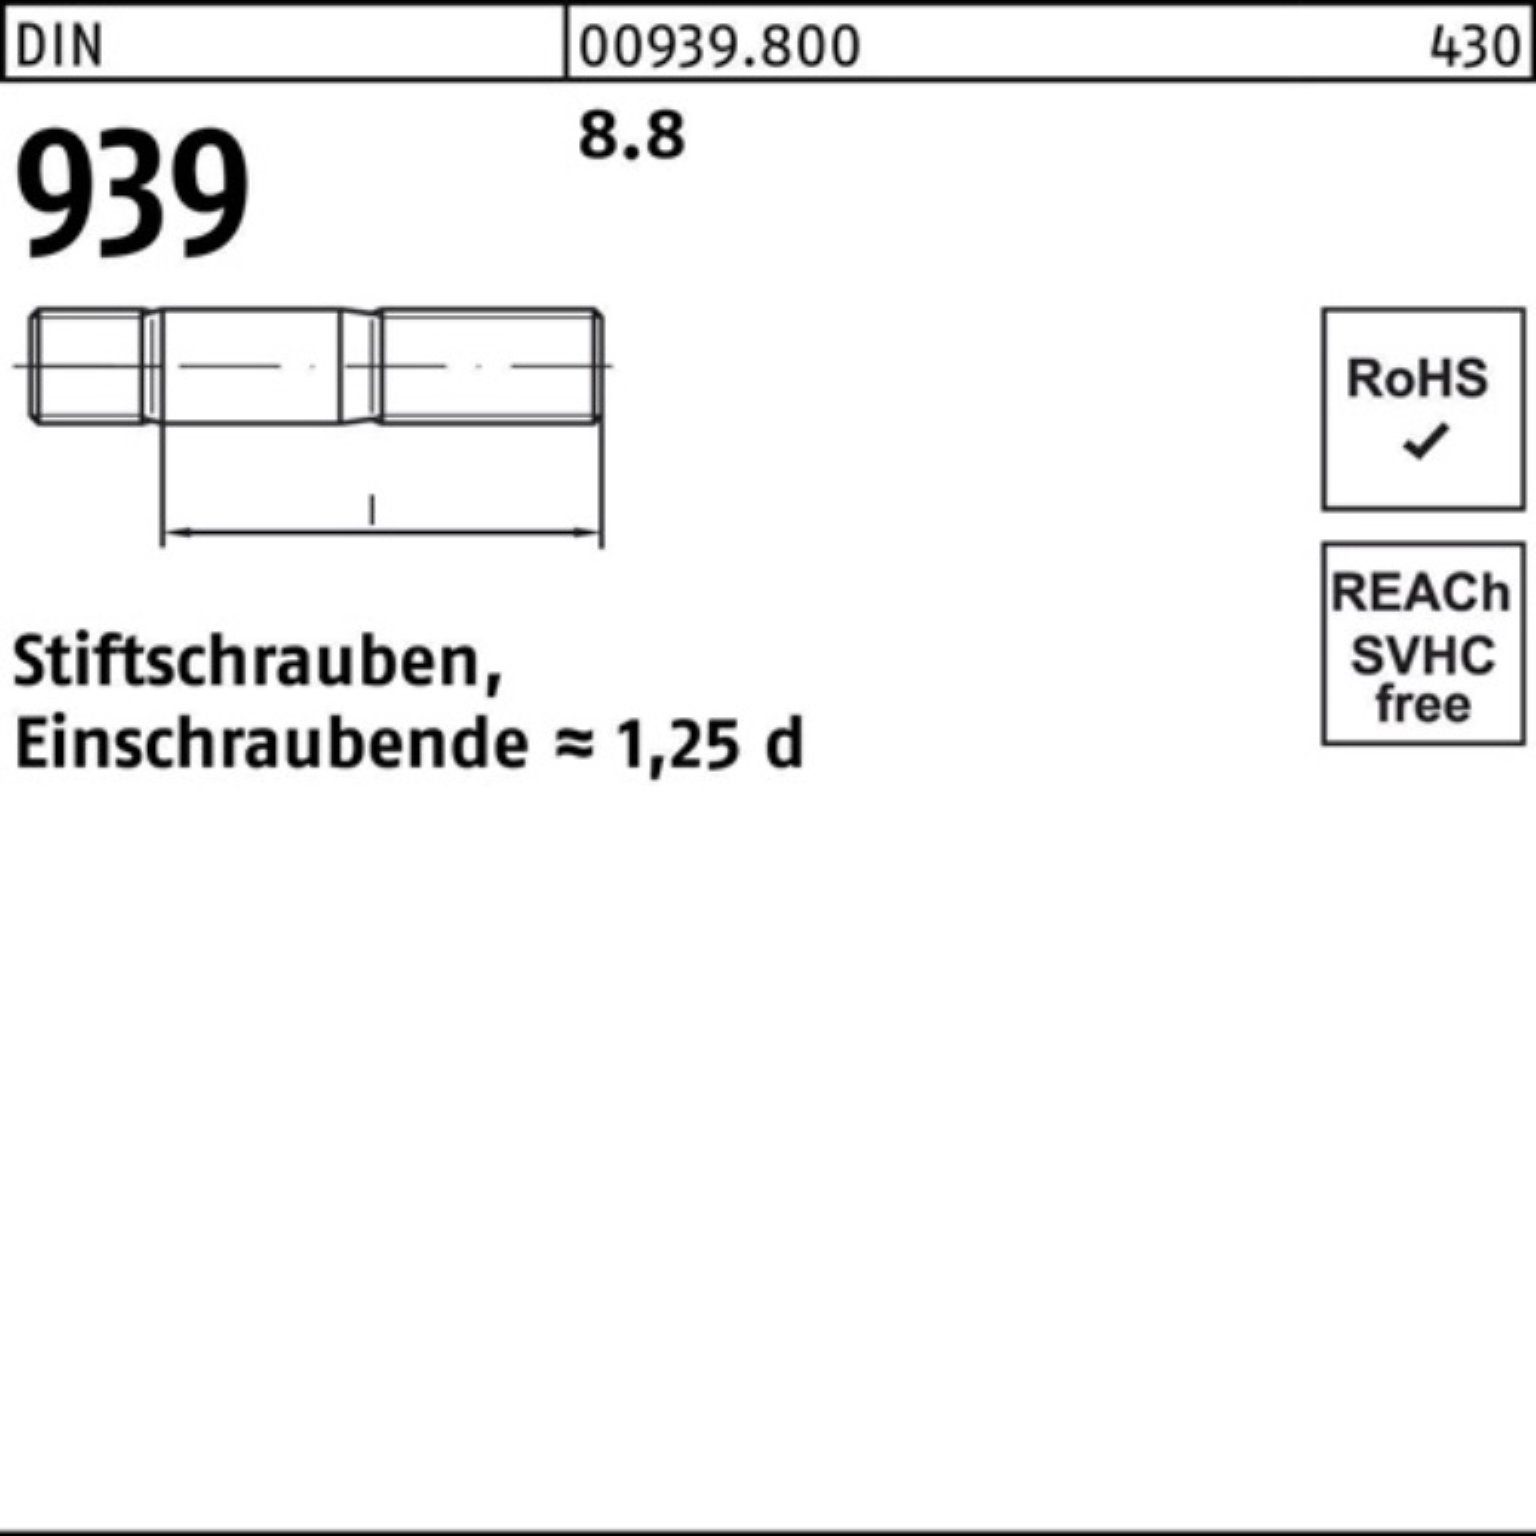 Reyher Stiftschraube 100er Pack Stiftschraube Einschraubende=1,25d 1 8.8 S 939 140 M20x DIN